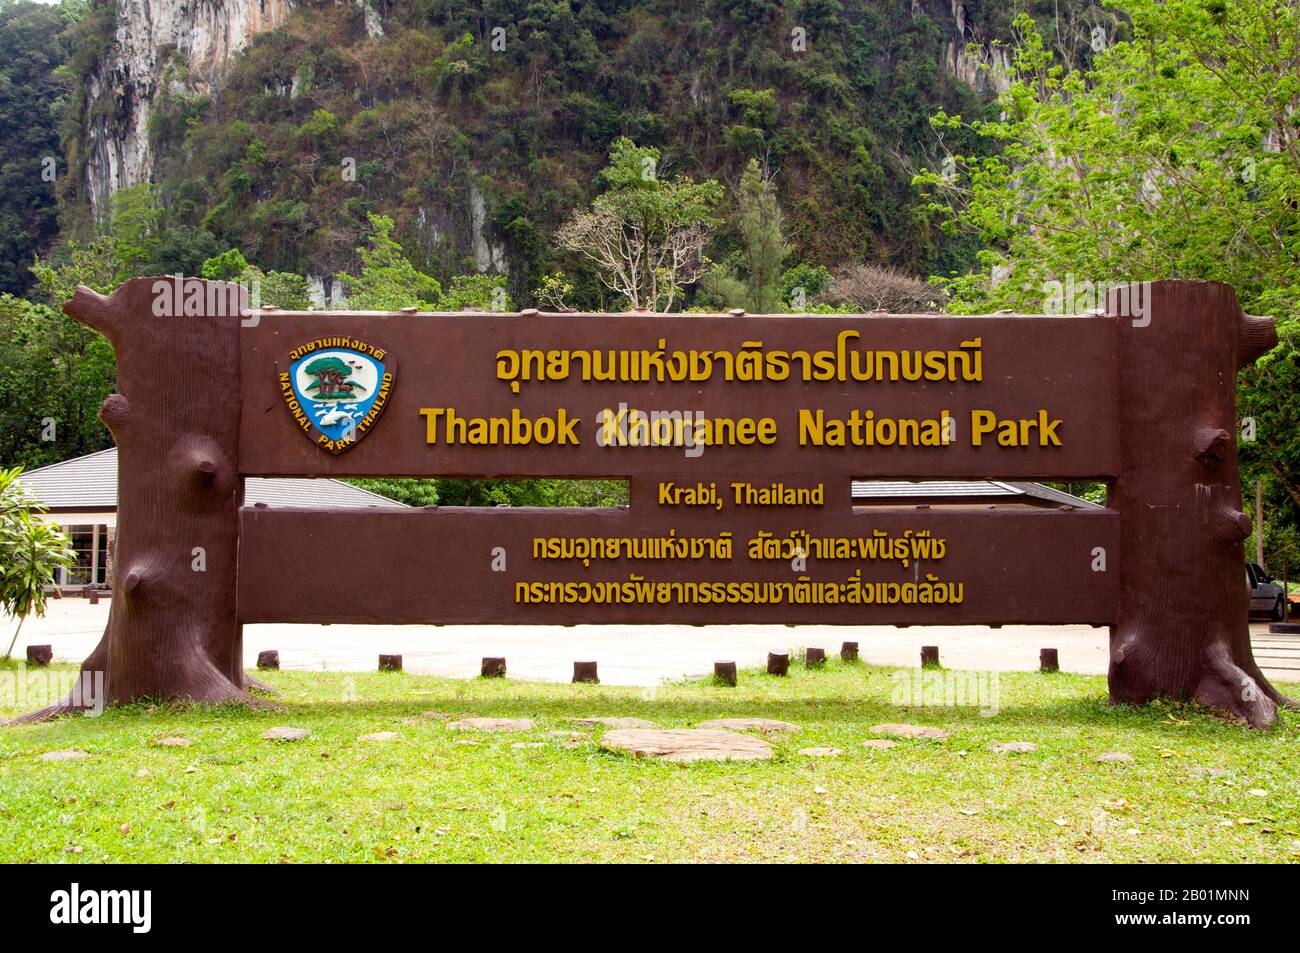 Thailandia: Cartello del parco, quindi Parco Nazionale Bokkharani, provincia di Krabi. Il Parco Nazionale di Than Bokkharani si trova nella provincia di Krabi a circa 45 chilometri (28 miglia) a nord-ovest della città di Krabi. Il parco copre un'area di 121 chilometri quadrati (47 miglia quadrate) ed è caratterizzato da una serie di affioramenti calcarei, foreste pluviali sempreverdi, foreste di mangrovie, torbiere e molte isole. Ci sono anche numerose grotte e complessi rupestri con alcune spettacolari stalagmiti e stalattiti. Il Bokkharani è incentrato su due famose grotte, Tham Lot e Tham Phi Hua, situate in un'area di grande tranquillità. Foto Stock